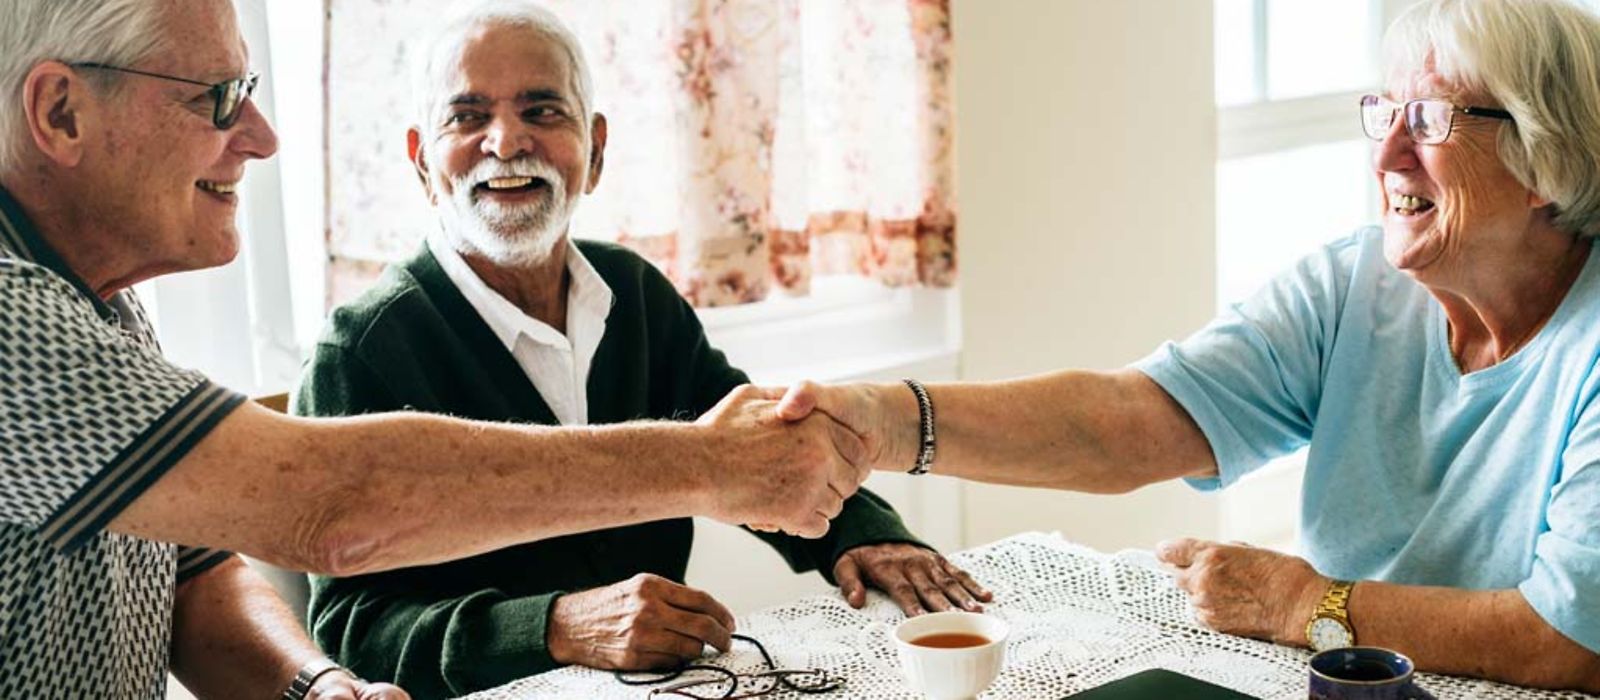 Drei Senioren sitzen zusammen am Tisch und begrüßen sich.